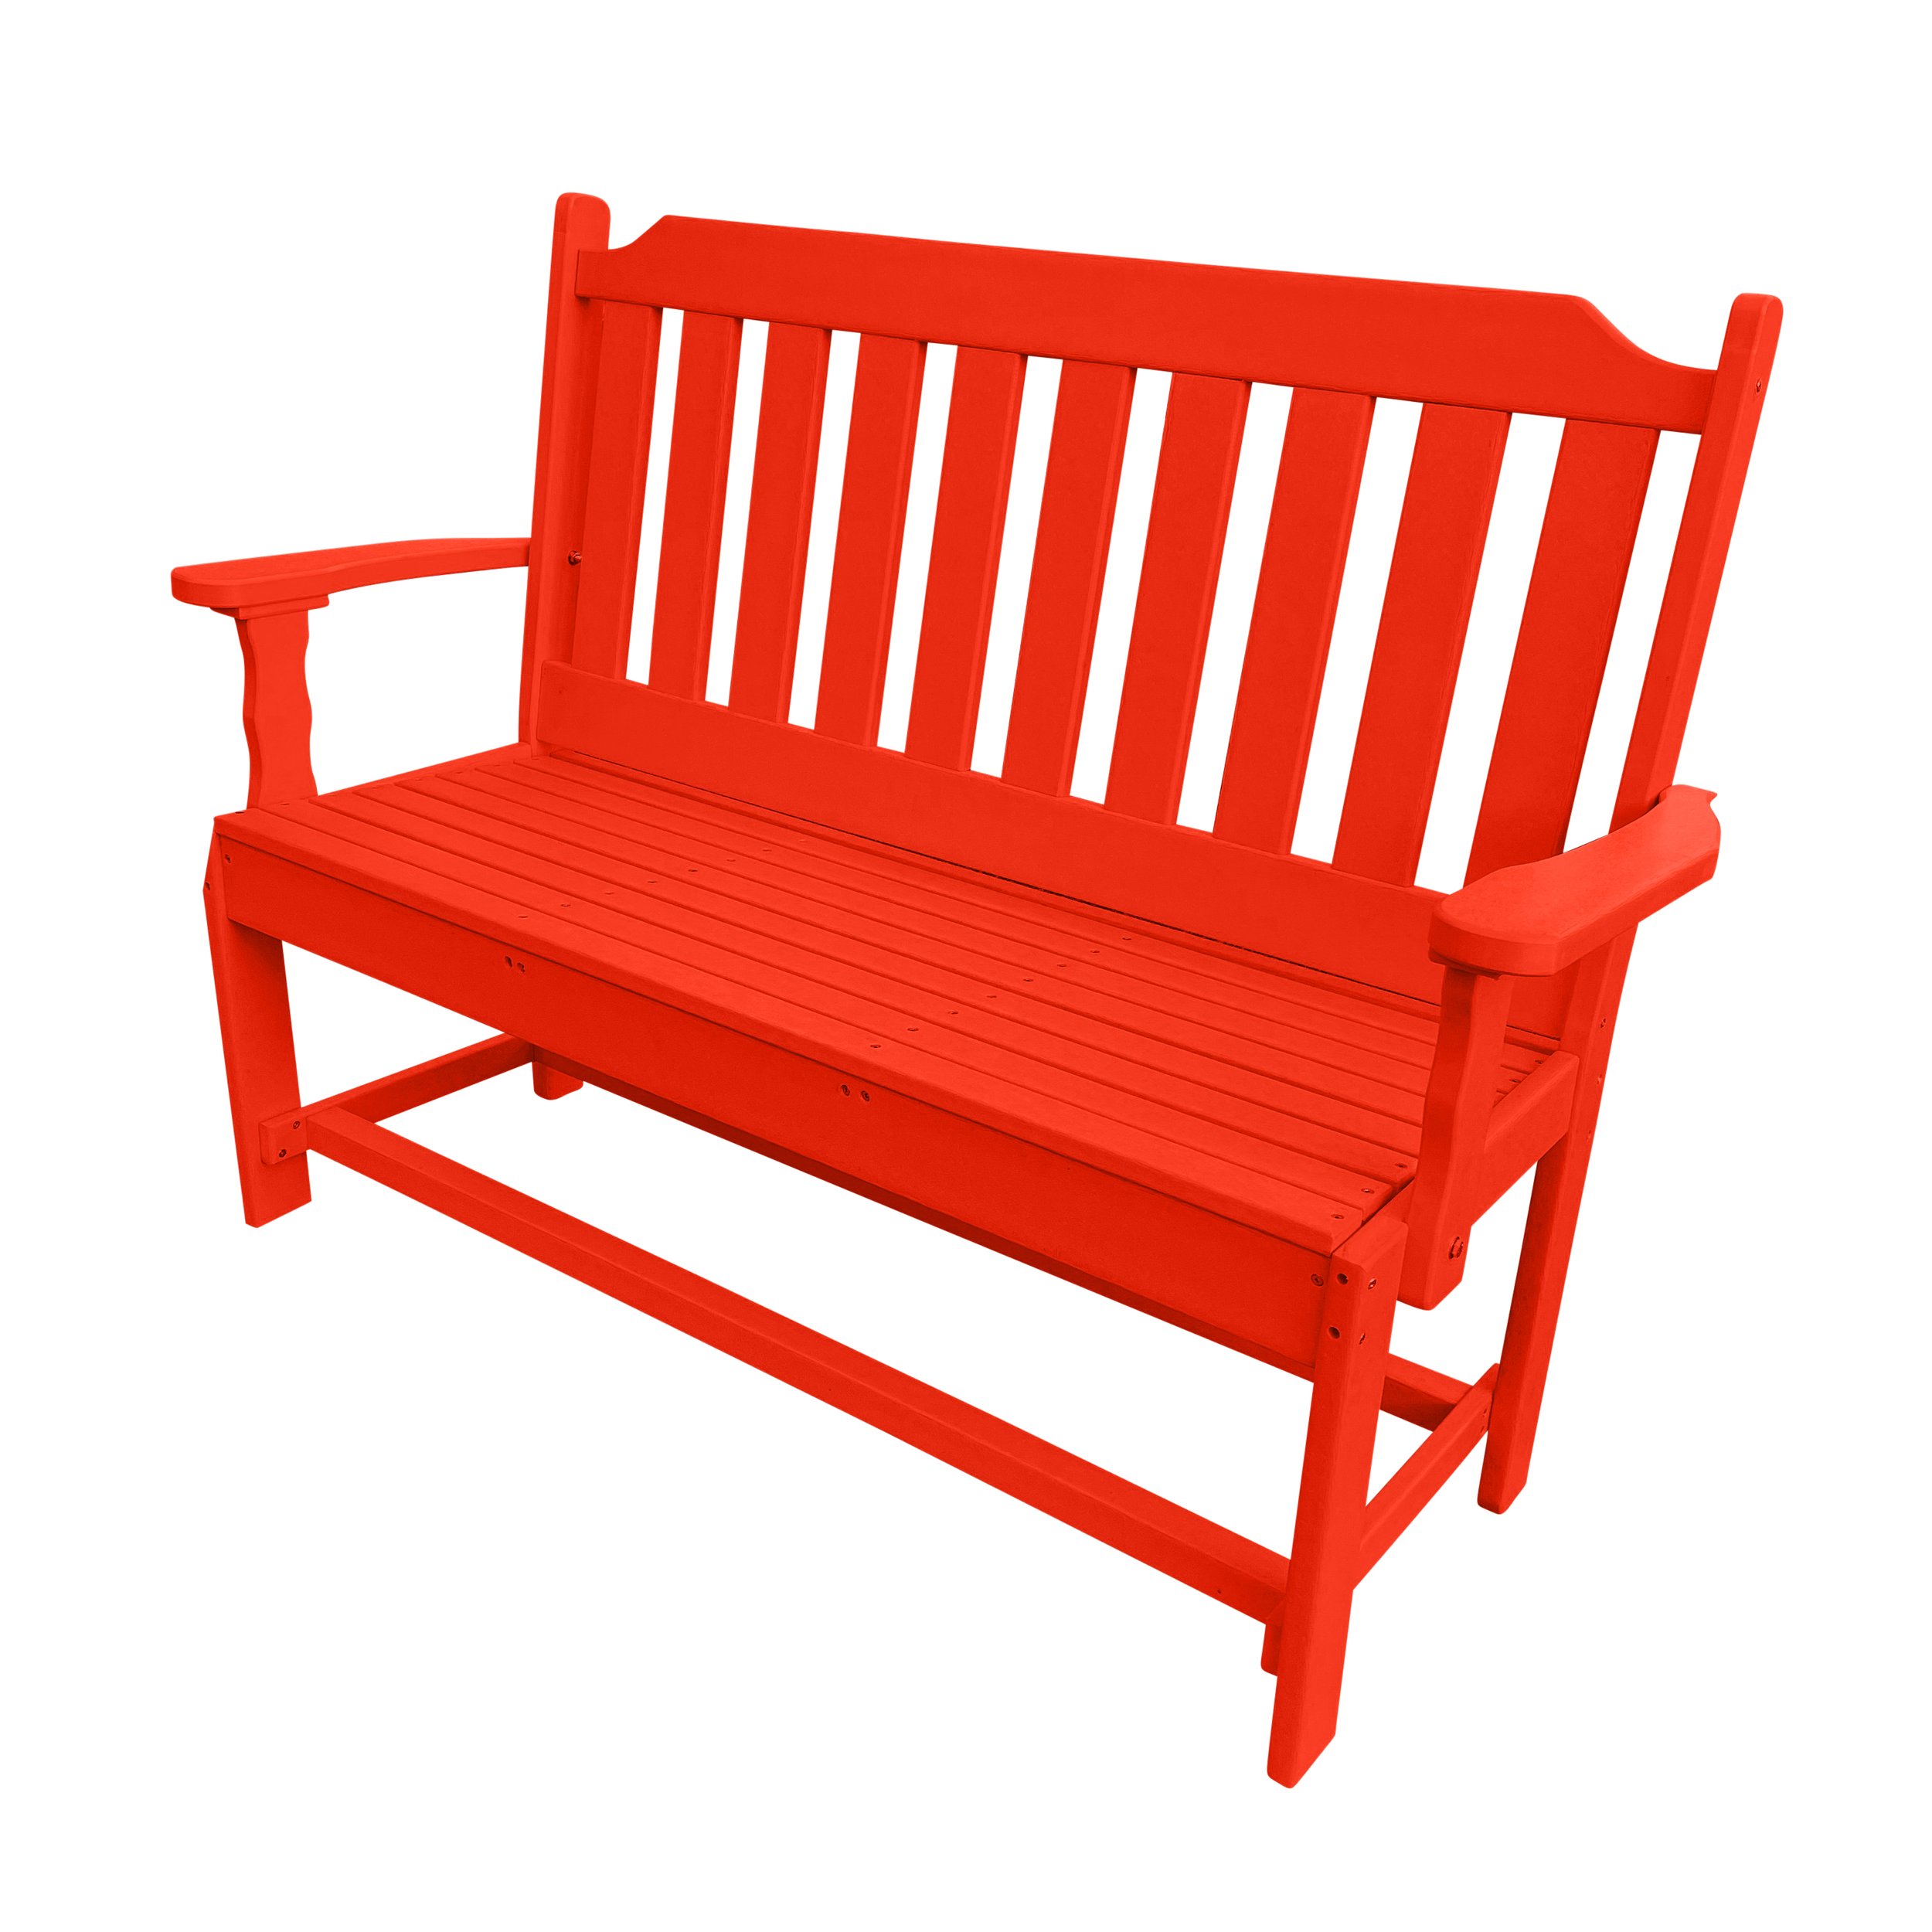 Garden bench | Ruby Red.jpg